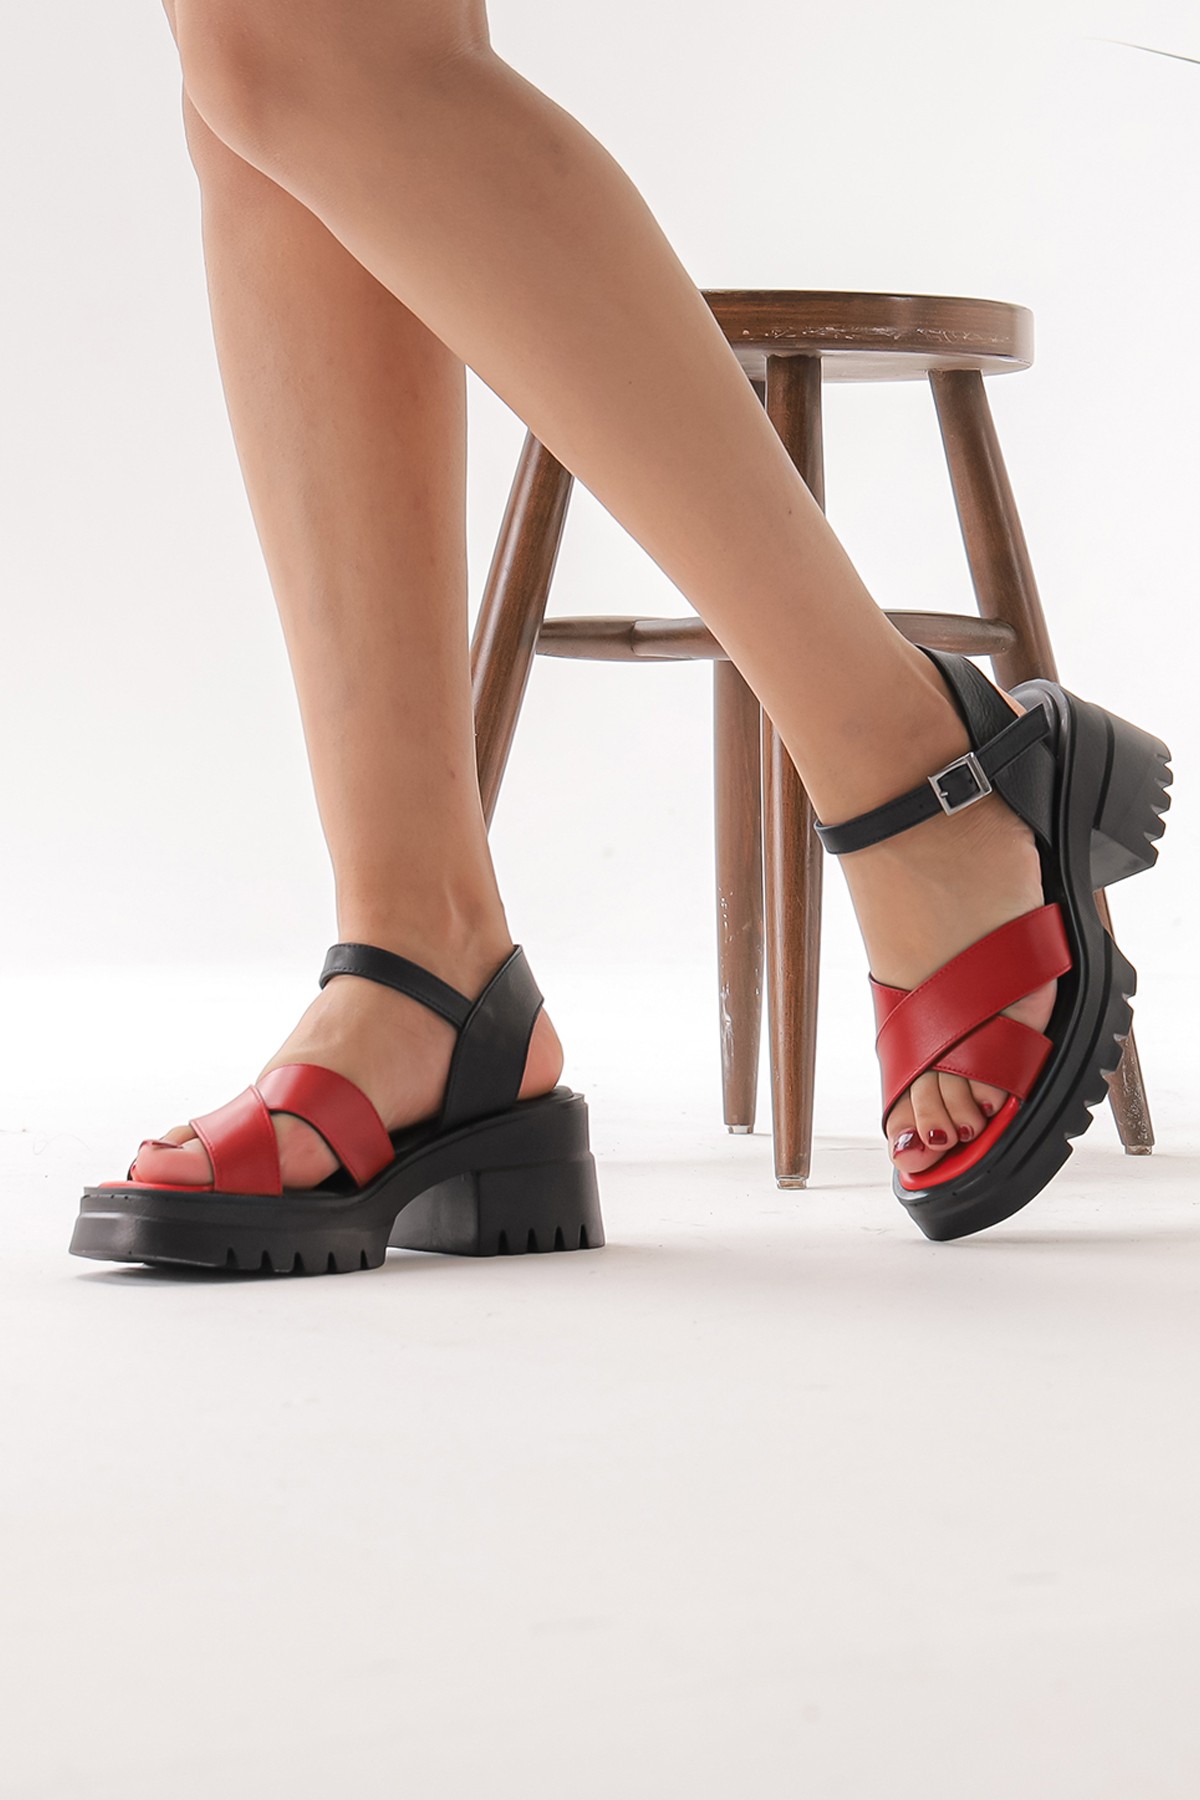 Cooliza Hakiki Deri Çapraz Bantlı Kemer Tokalı Kadın Rahat Günlük Sandalet Ayakkabı - Siyah-Kırmızı